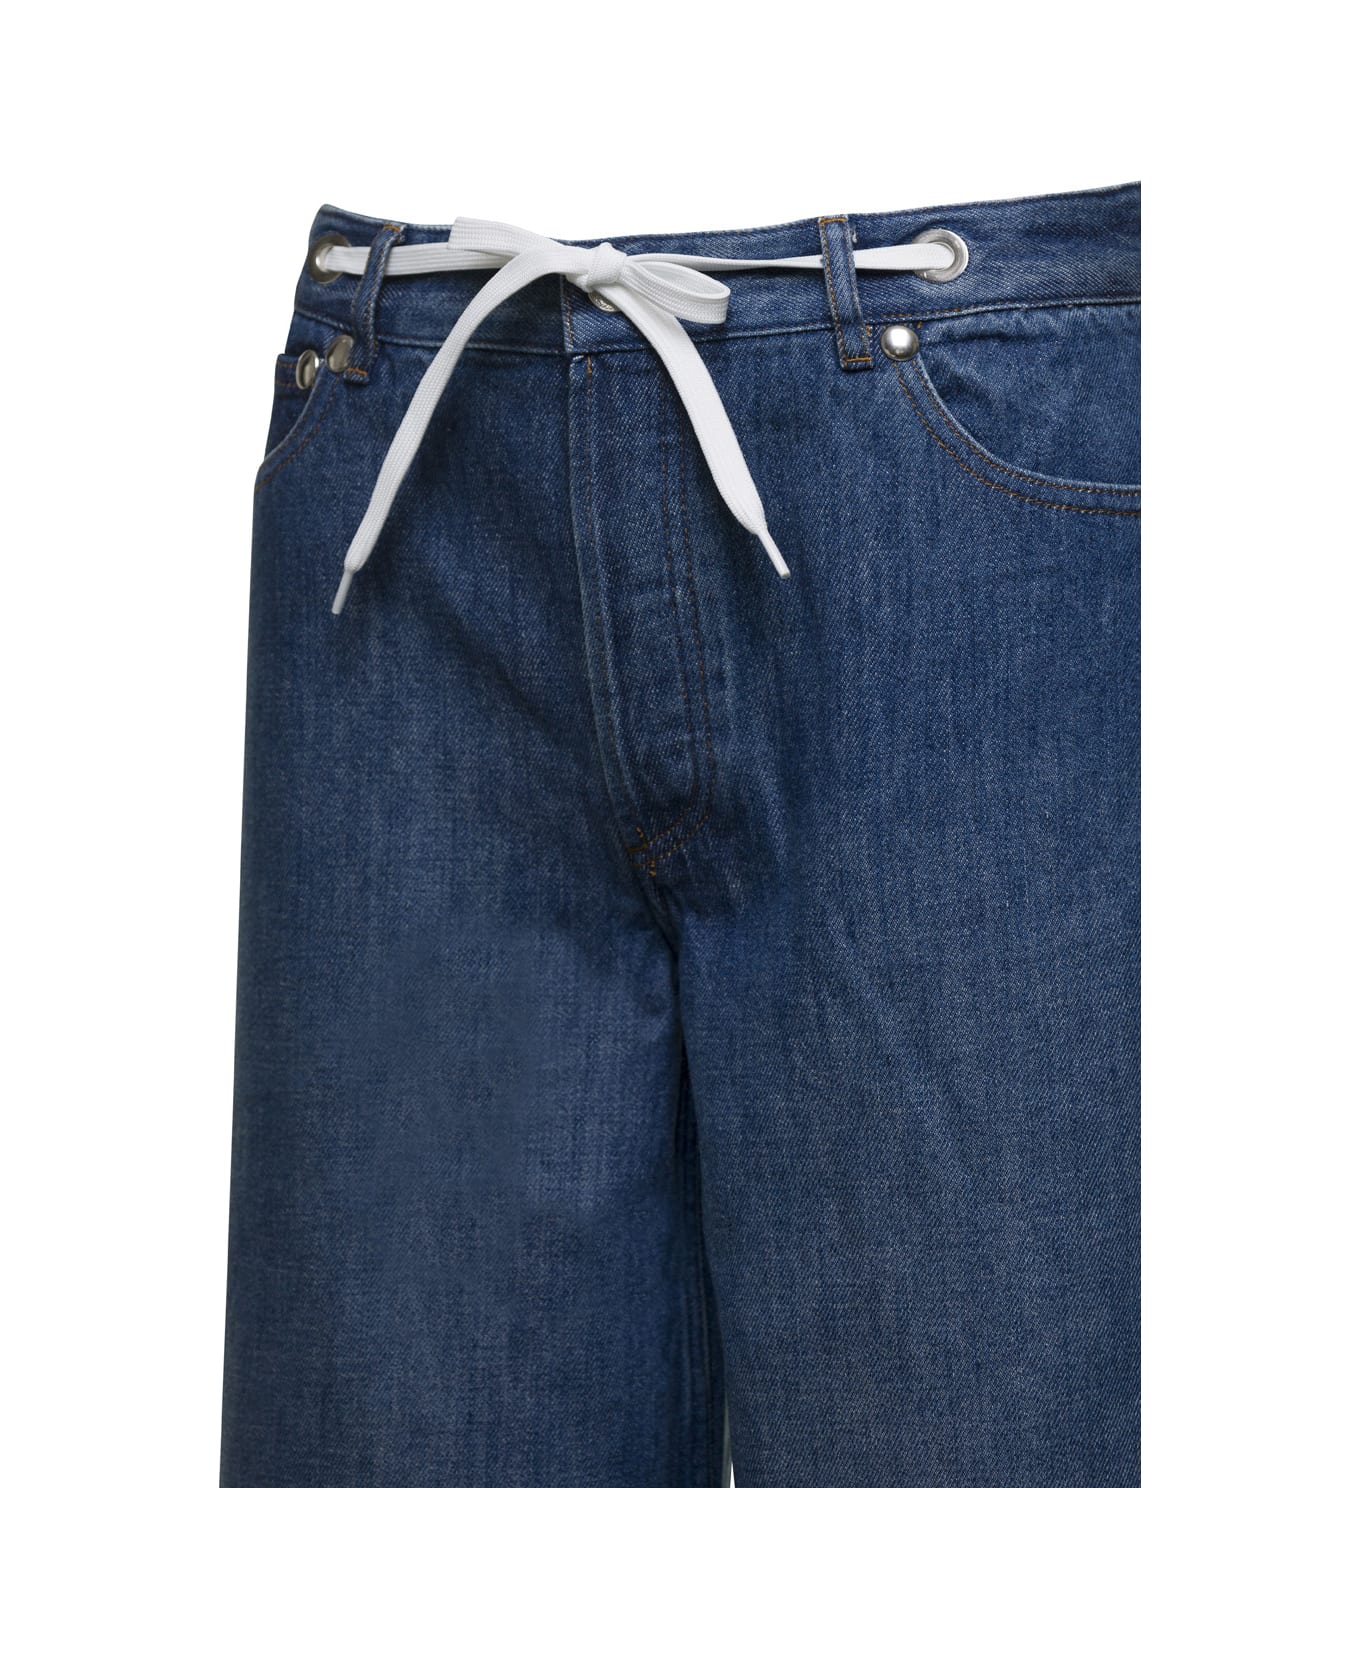 A.P.C. Wide Leg Jeans In Denim - Blu